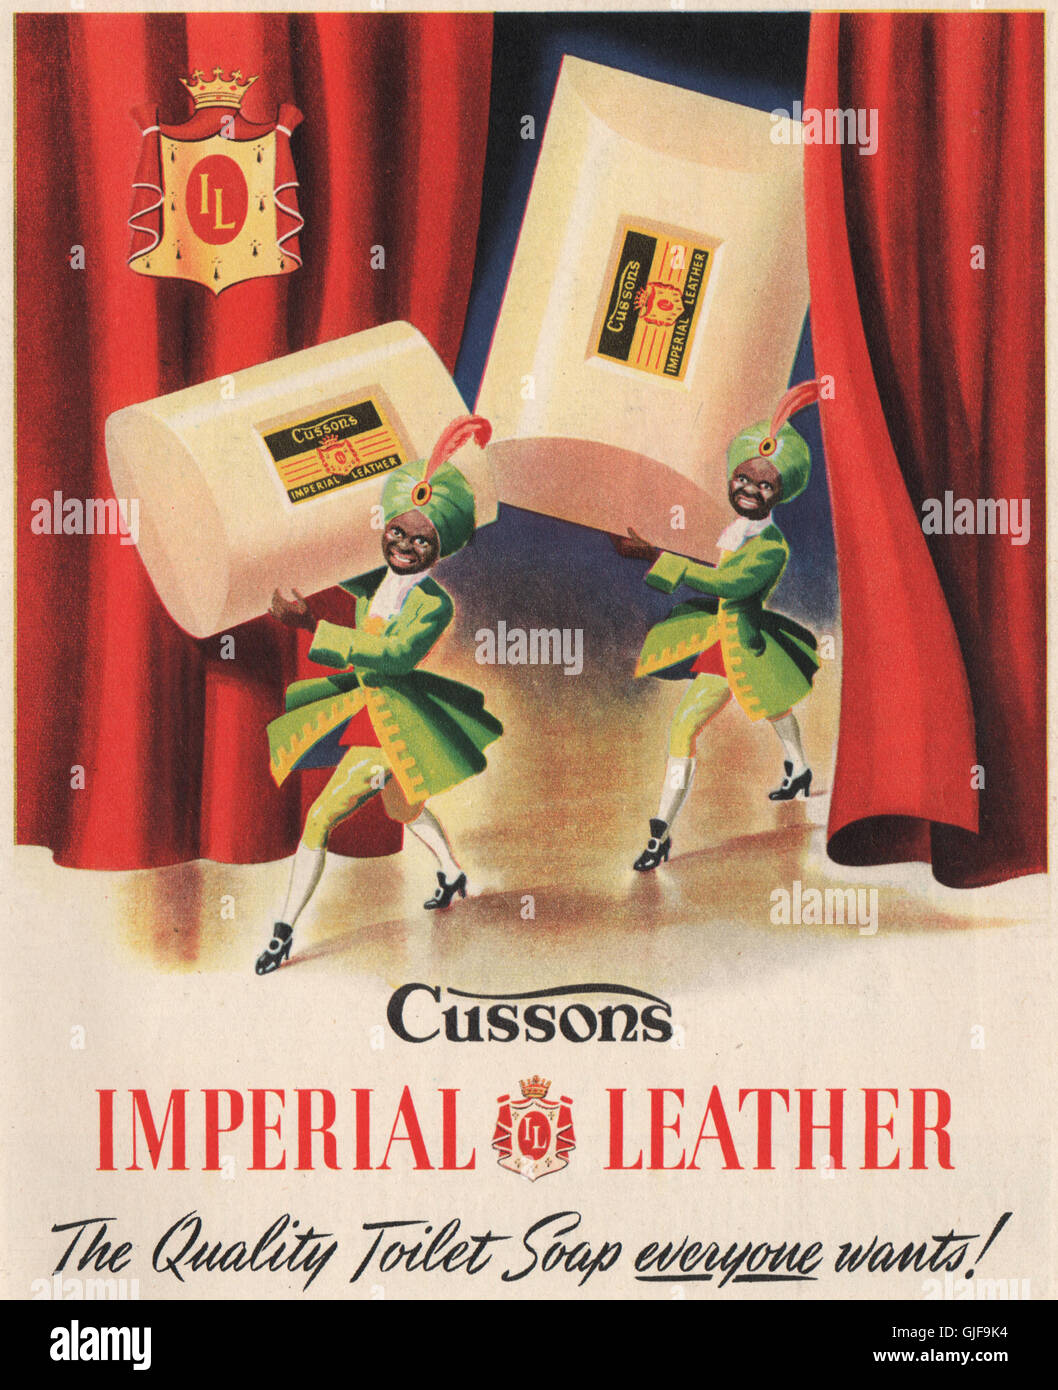 Imperial leather immagini e fotografie stock ad alta risoluzione - Alamy